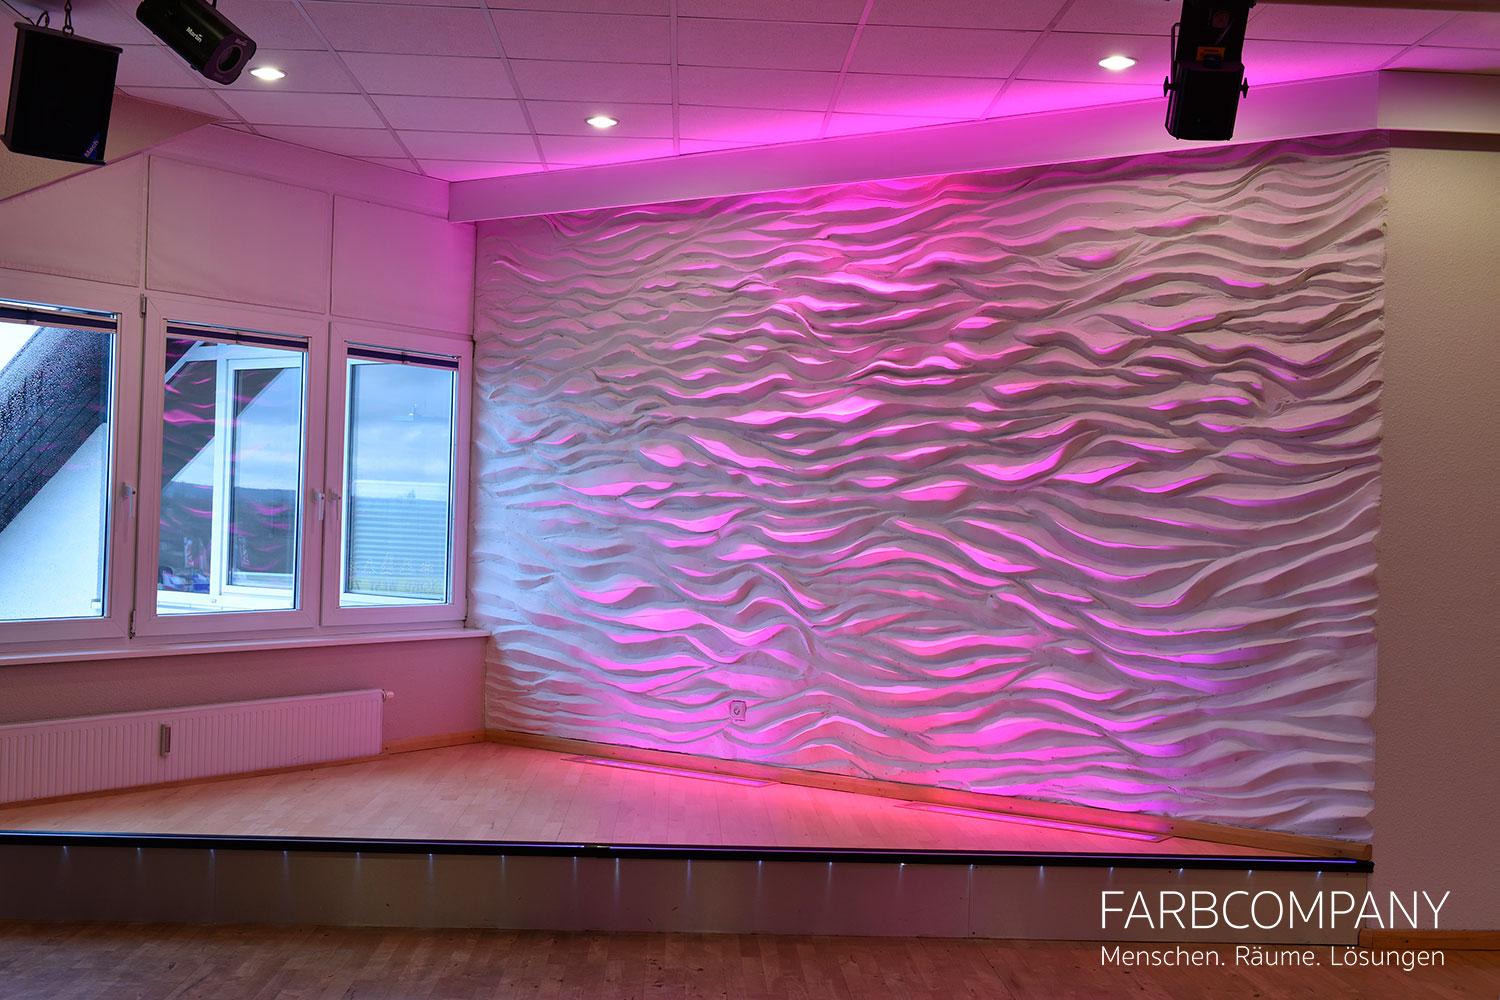 Wand Style/ Design einer exklusiven Reliefwand mit LED Beleuchtung #wandgestaltung #wandrelief #beleuchteteledwand ©Mike Schleupner